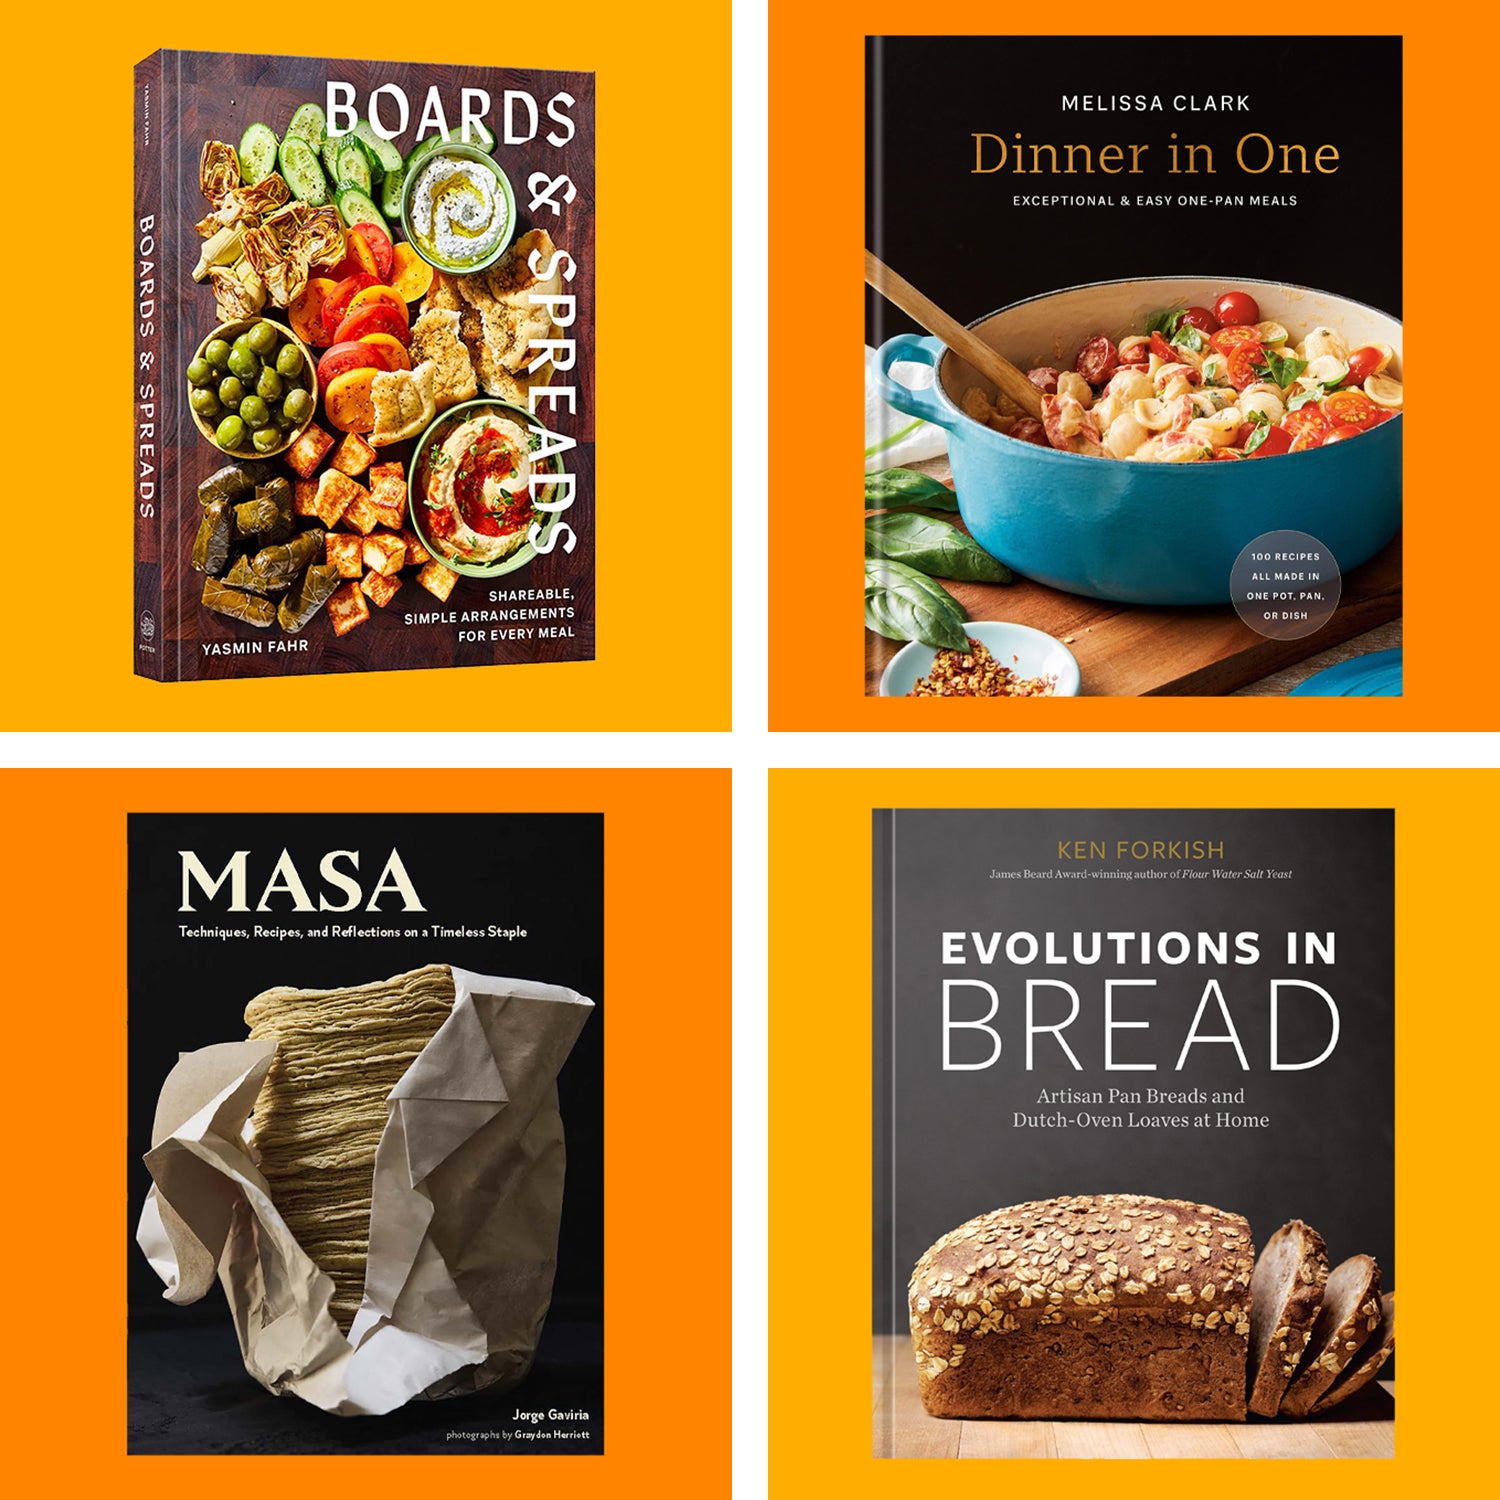 https://cdn.outsideonline.com/wp-content/uploads/2022/09/best-fall-cookbooks-2022-1_s.jpg